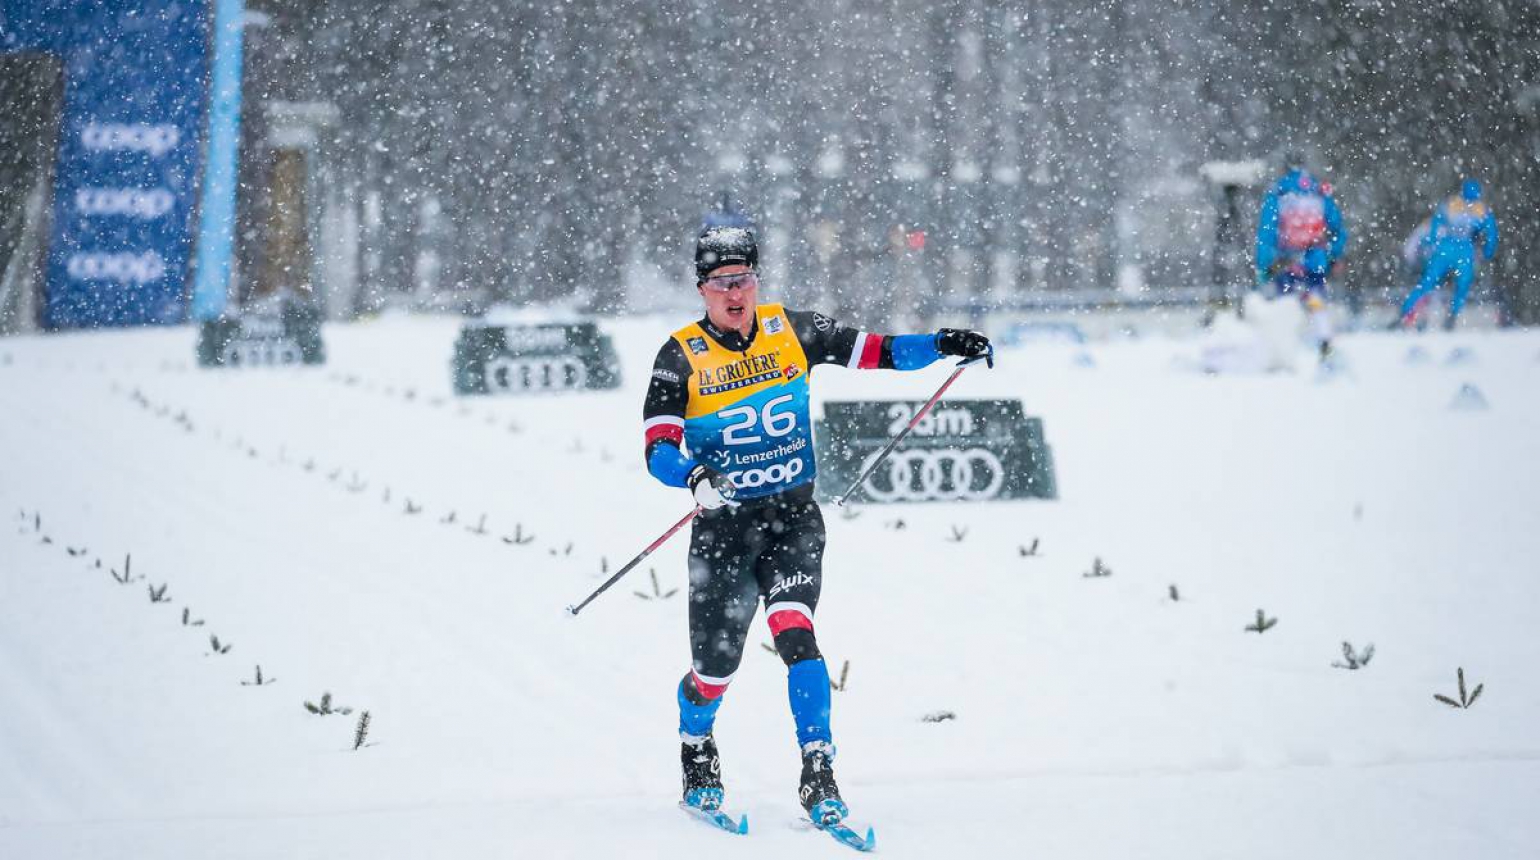 Navzdory pádu bere Michal Novák body i z druhé etapy Tour de Ski. Po závodech v Lenzerheide je průběžně devatenáctý